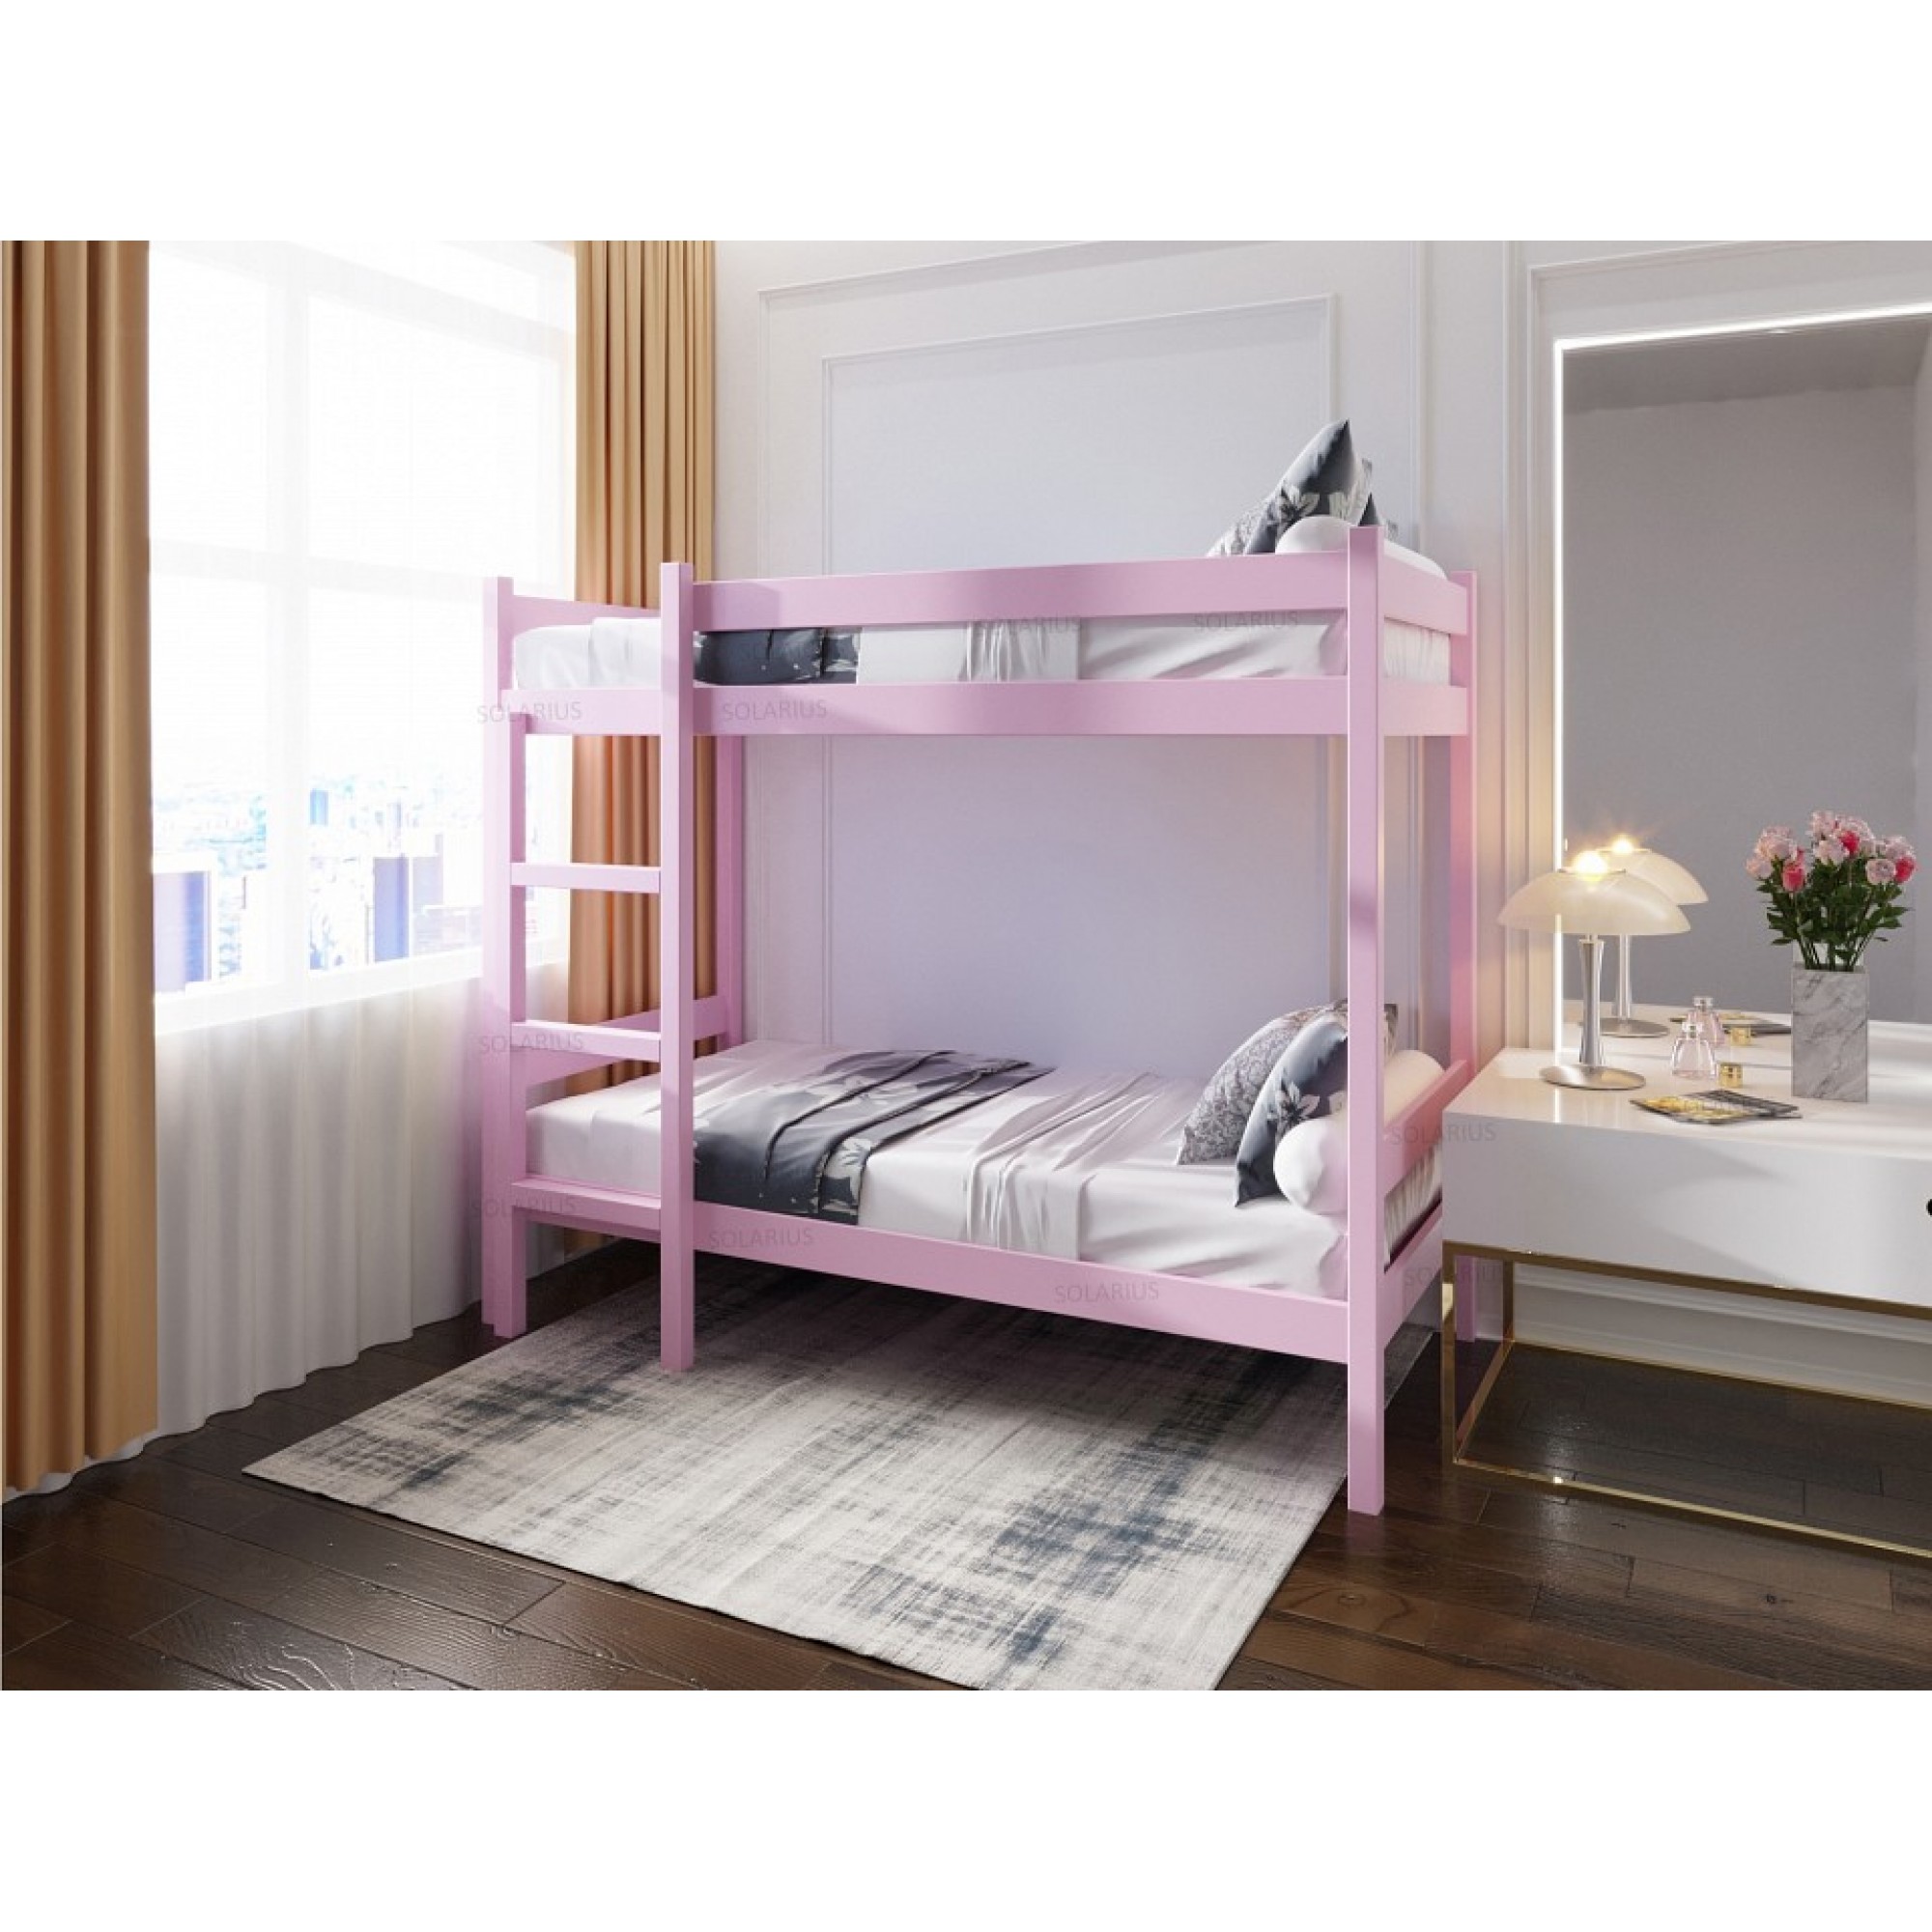 Кровать двухъярусная Solarius 1900x900 розовый    SLR_dvuh90190roz